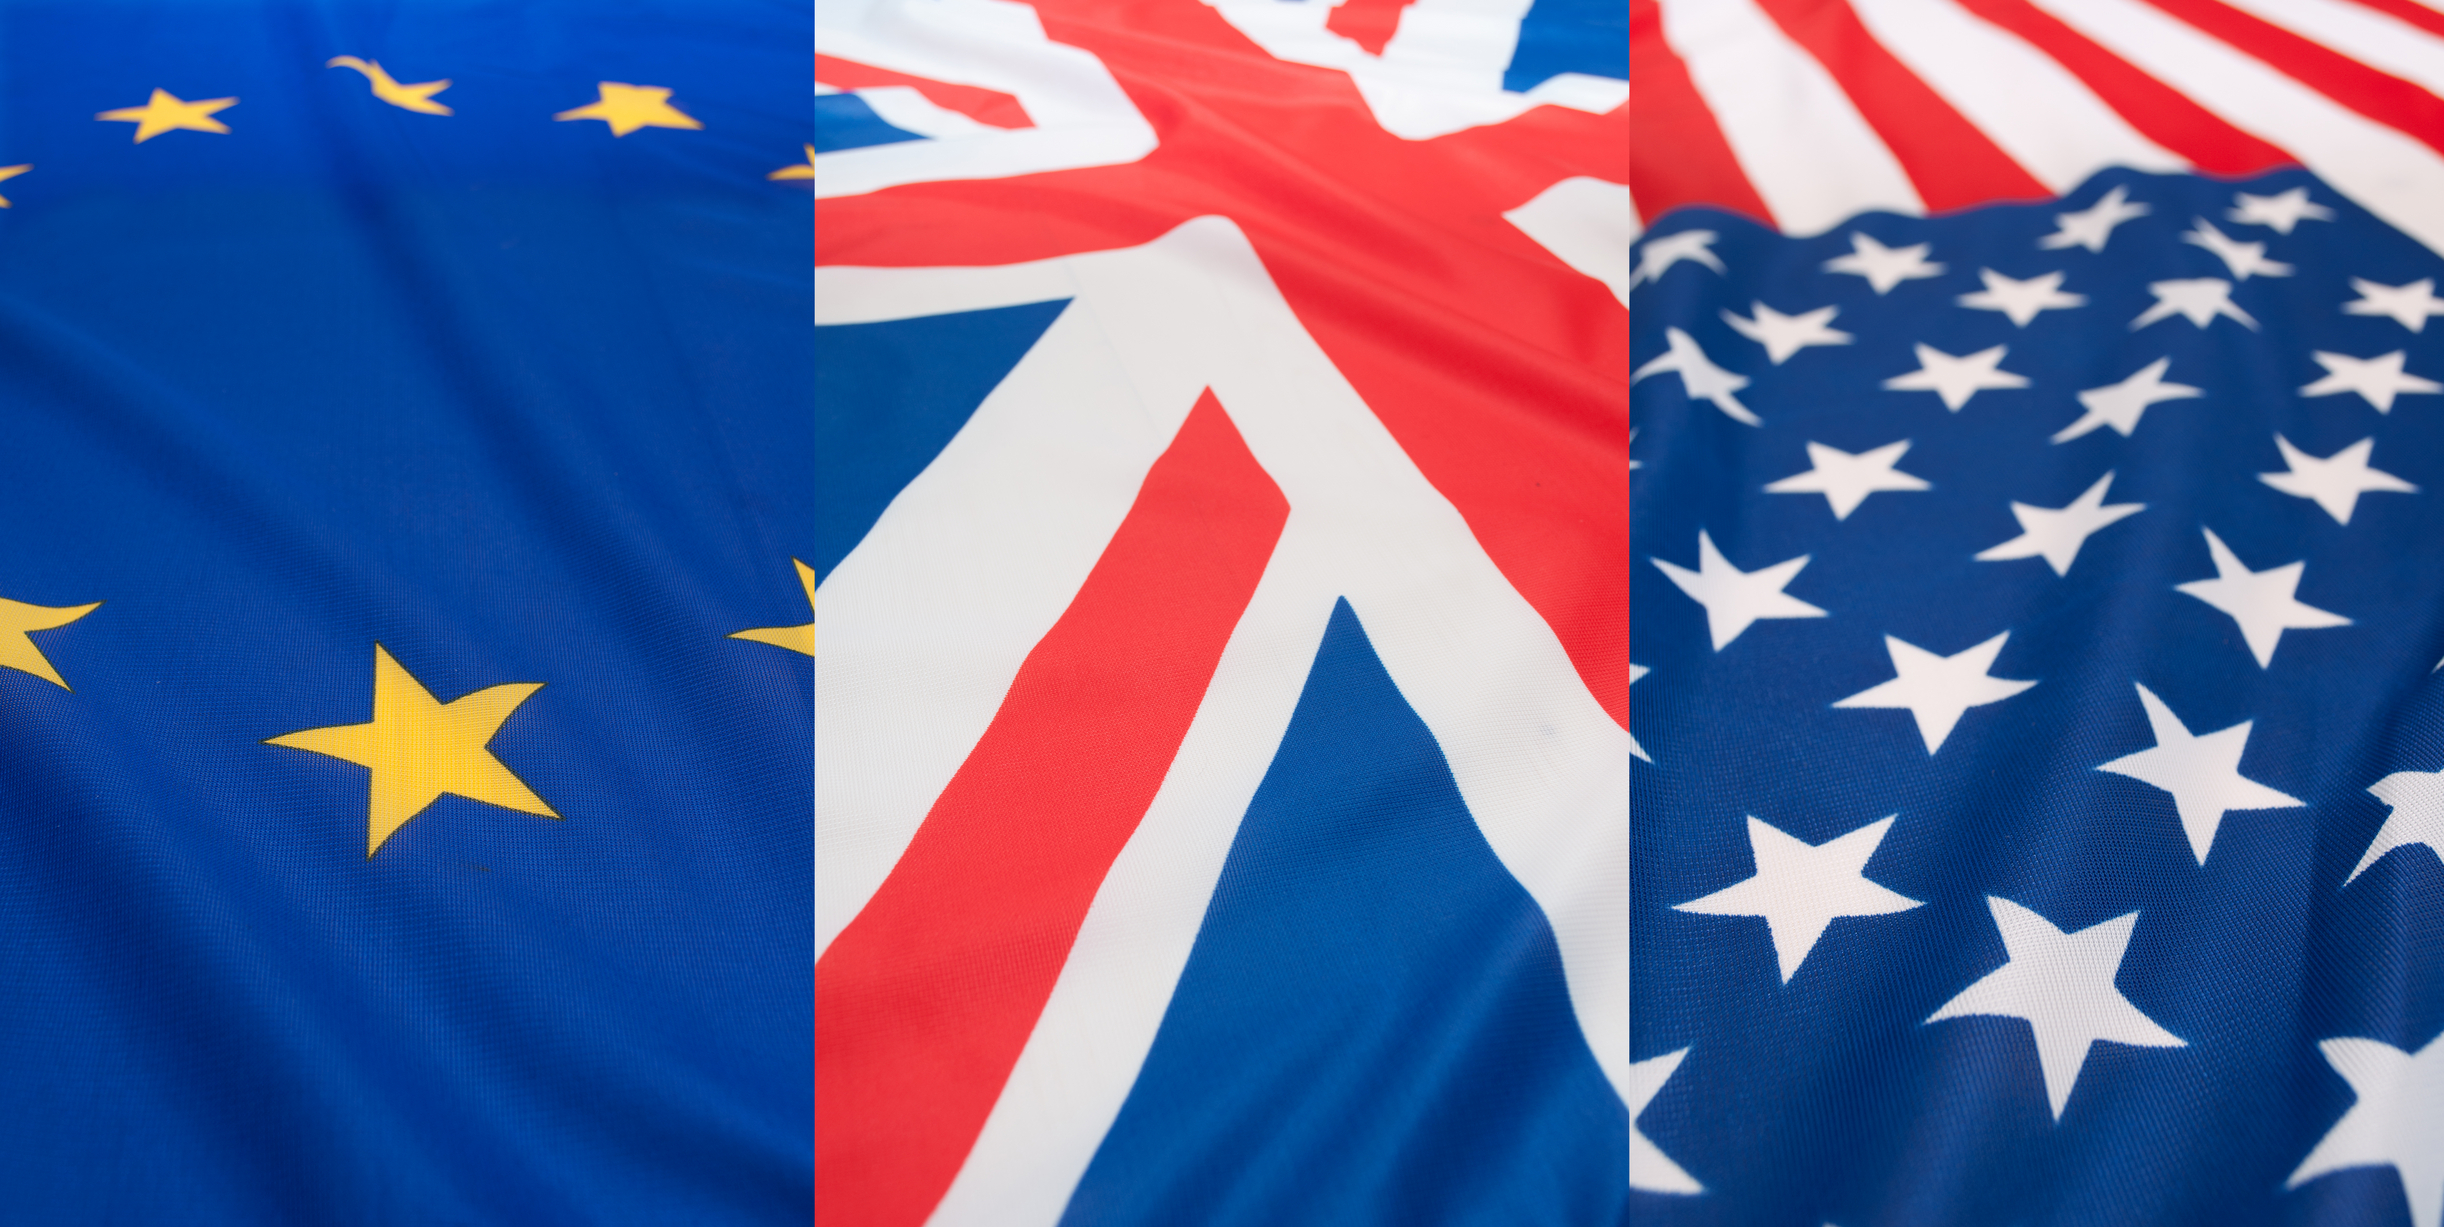 الاتحاد الأوروبي وأمريكا يهددان بريطانيا بحرب تجارية